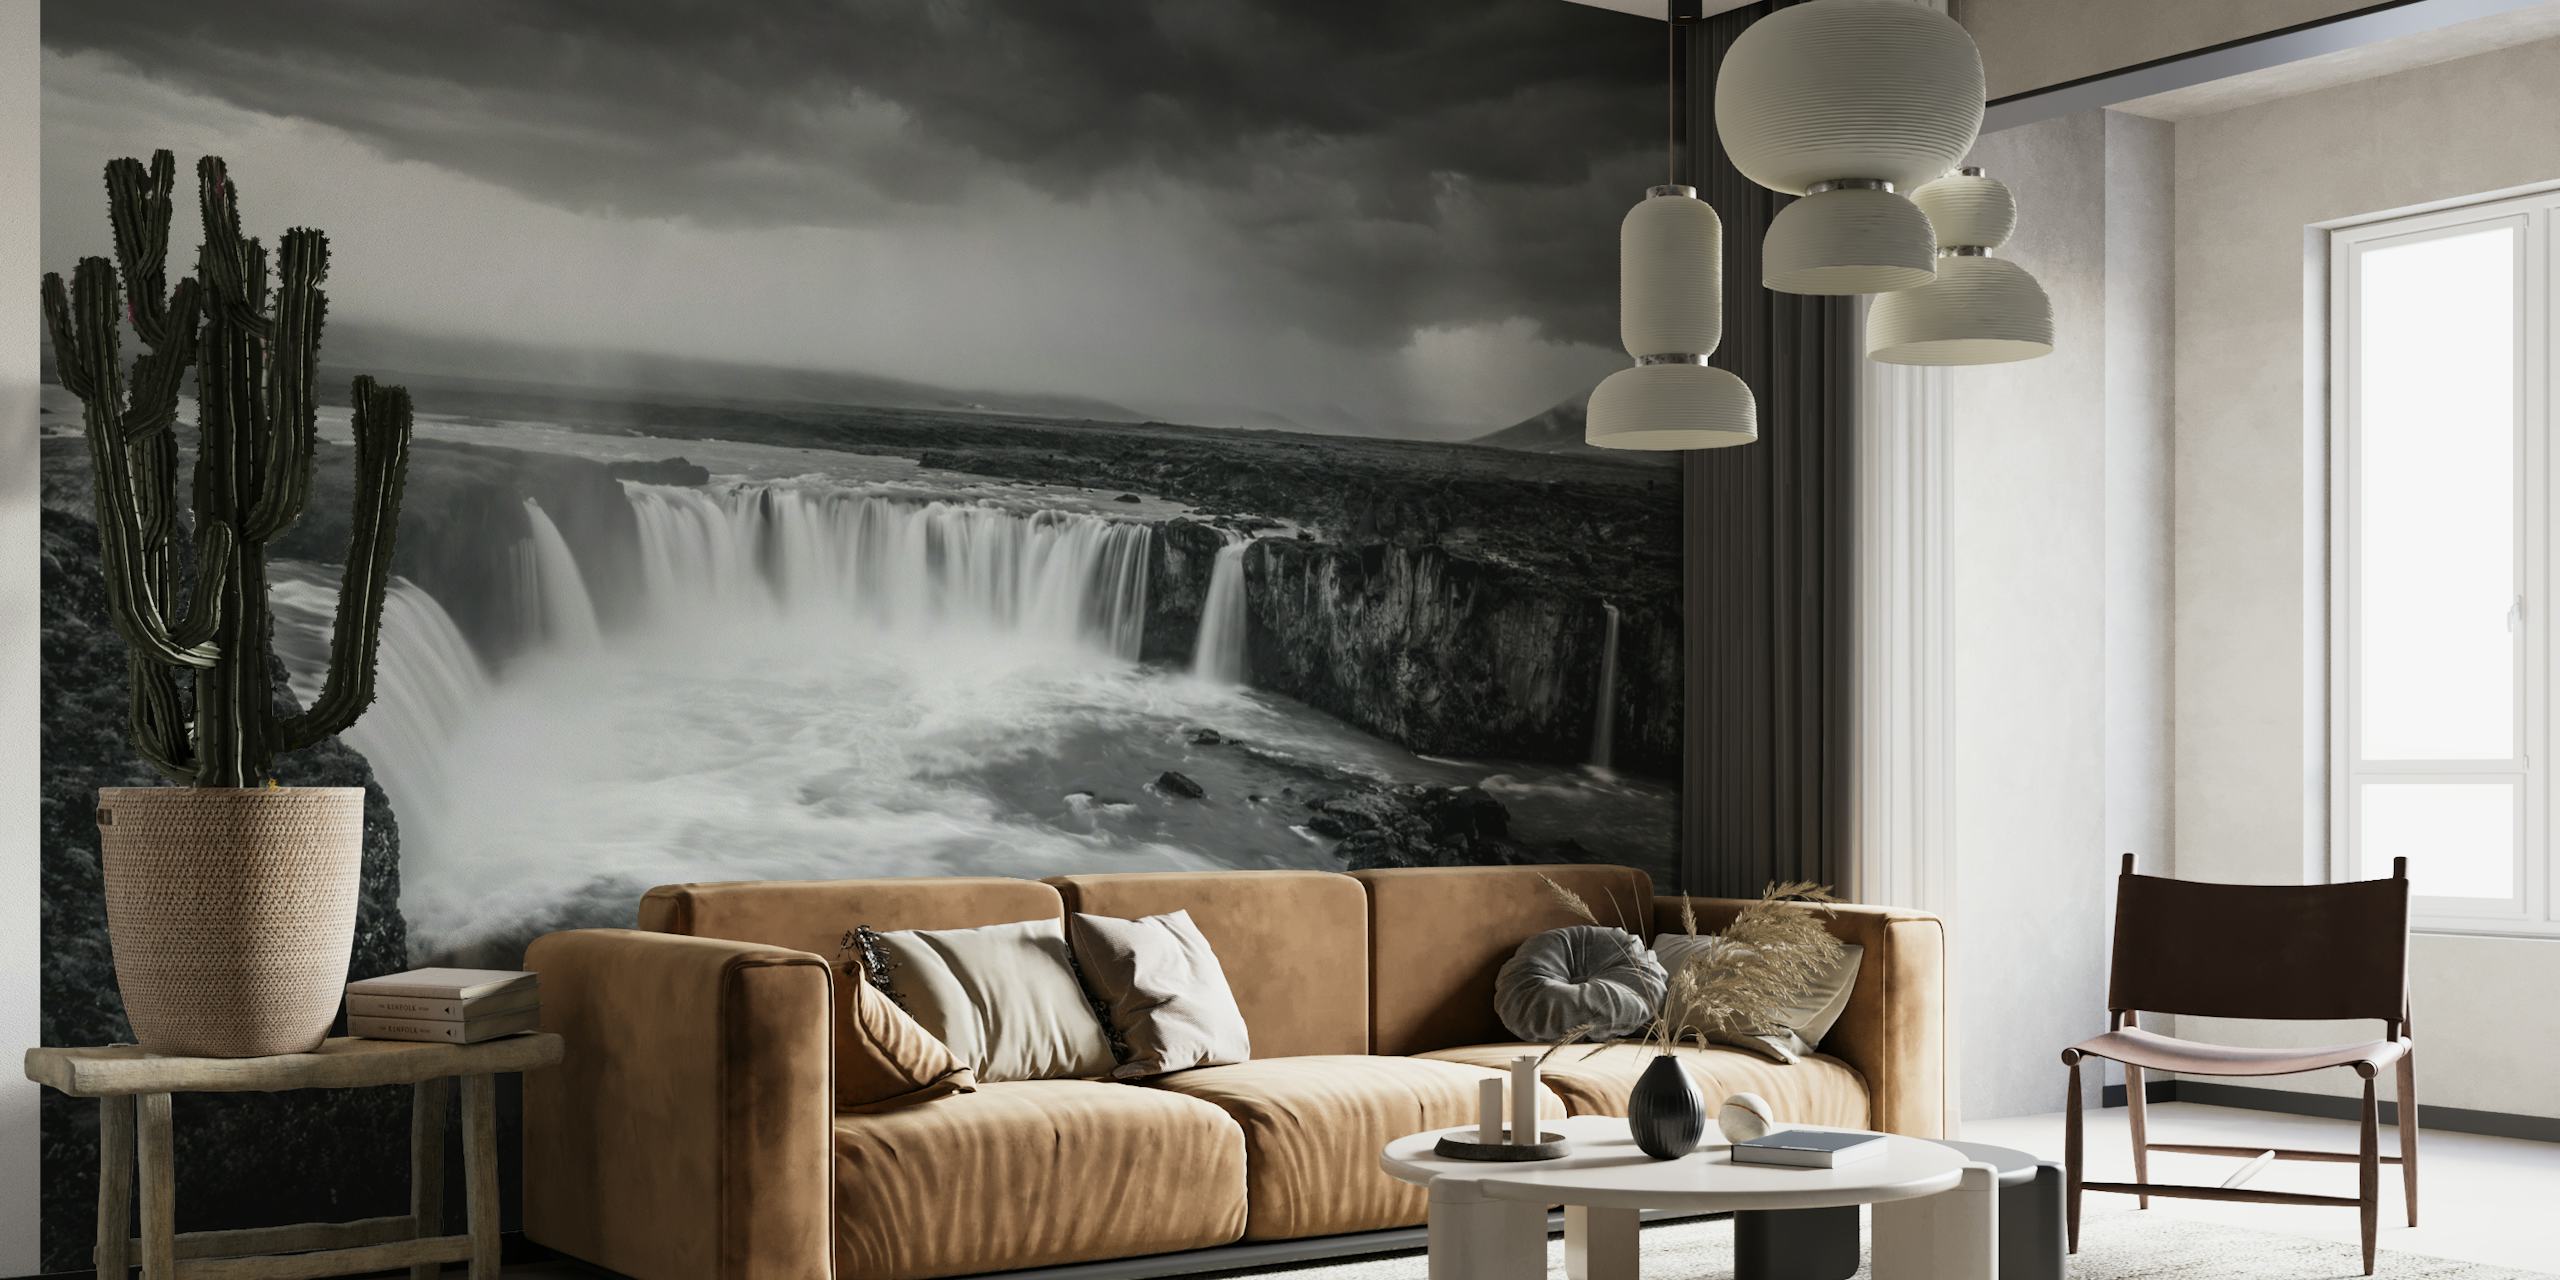 Schwarz-weißes Wandbild eines mächtigen Wasserfalls unter einem stürmischen Himmel, das eine mythische und uralte Atmosphäre hervorruft